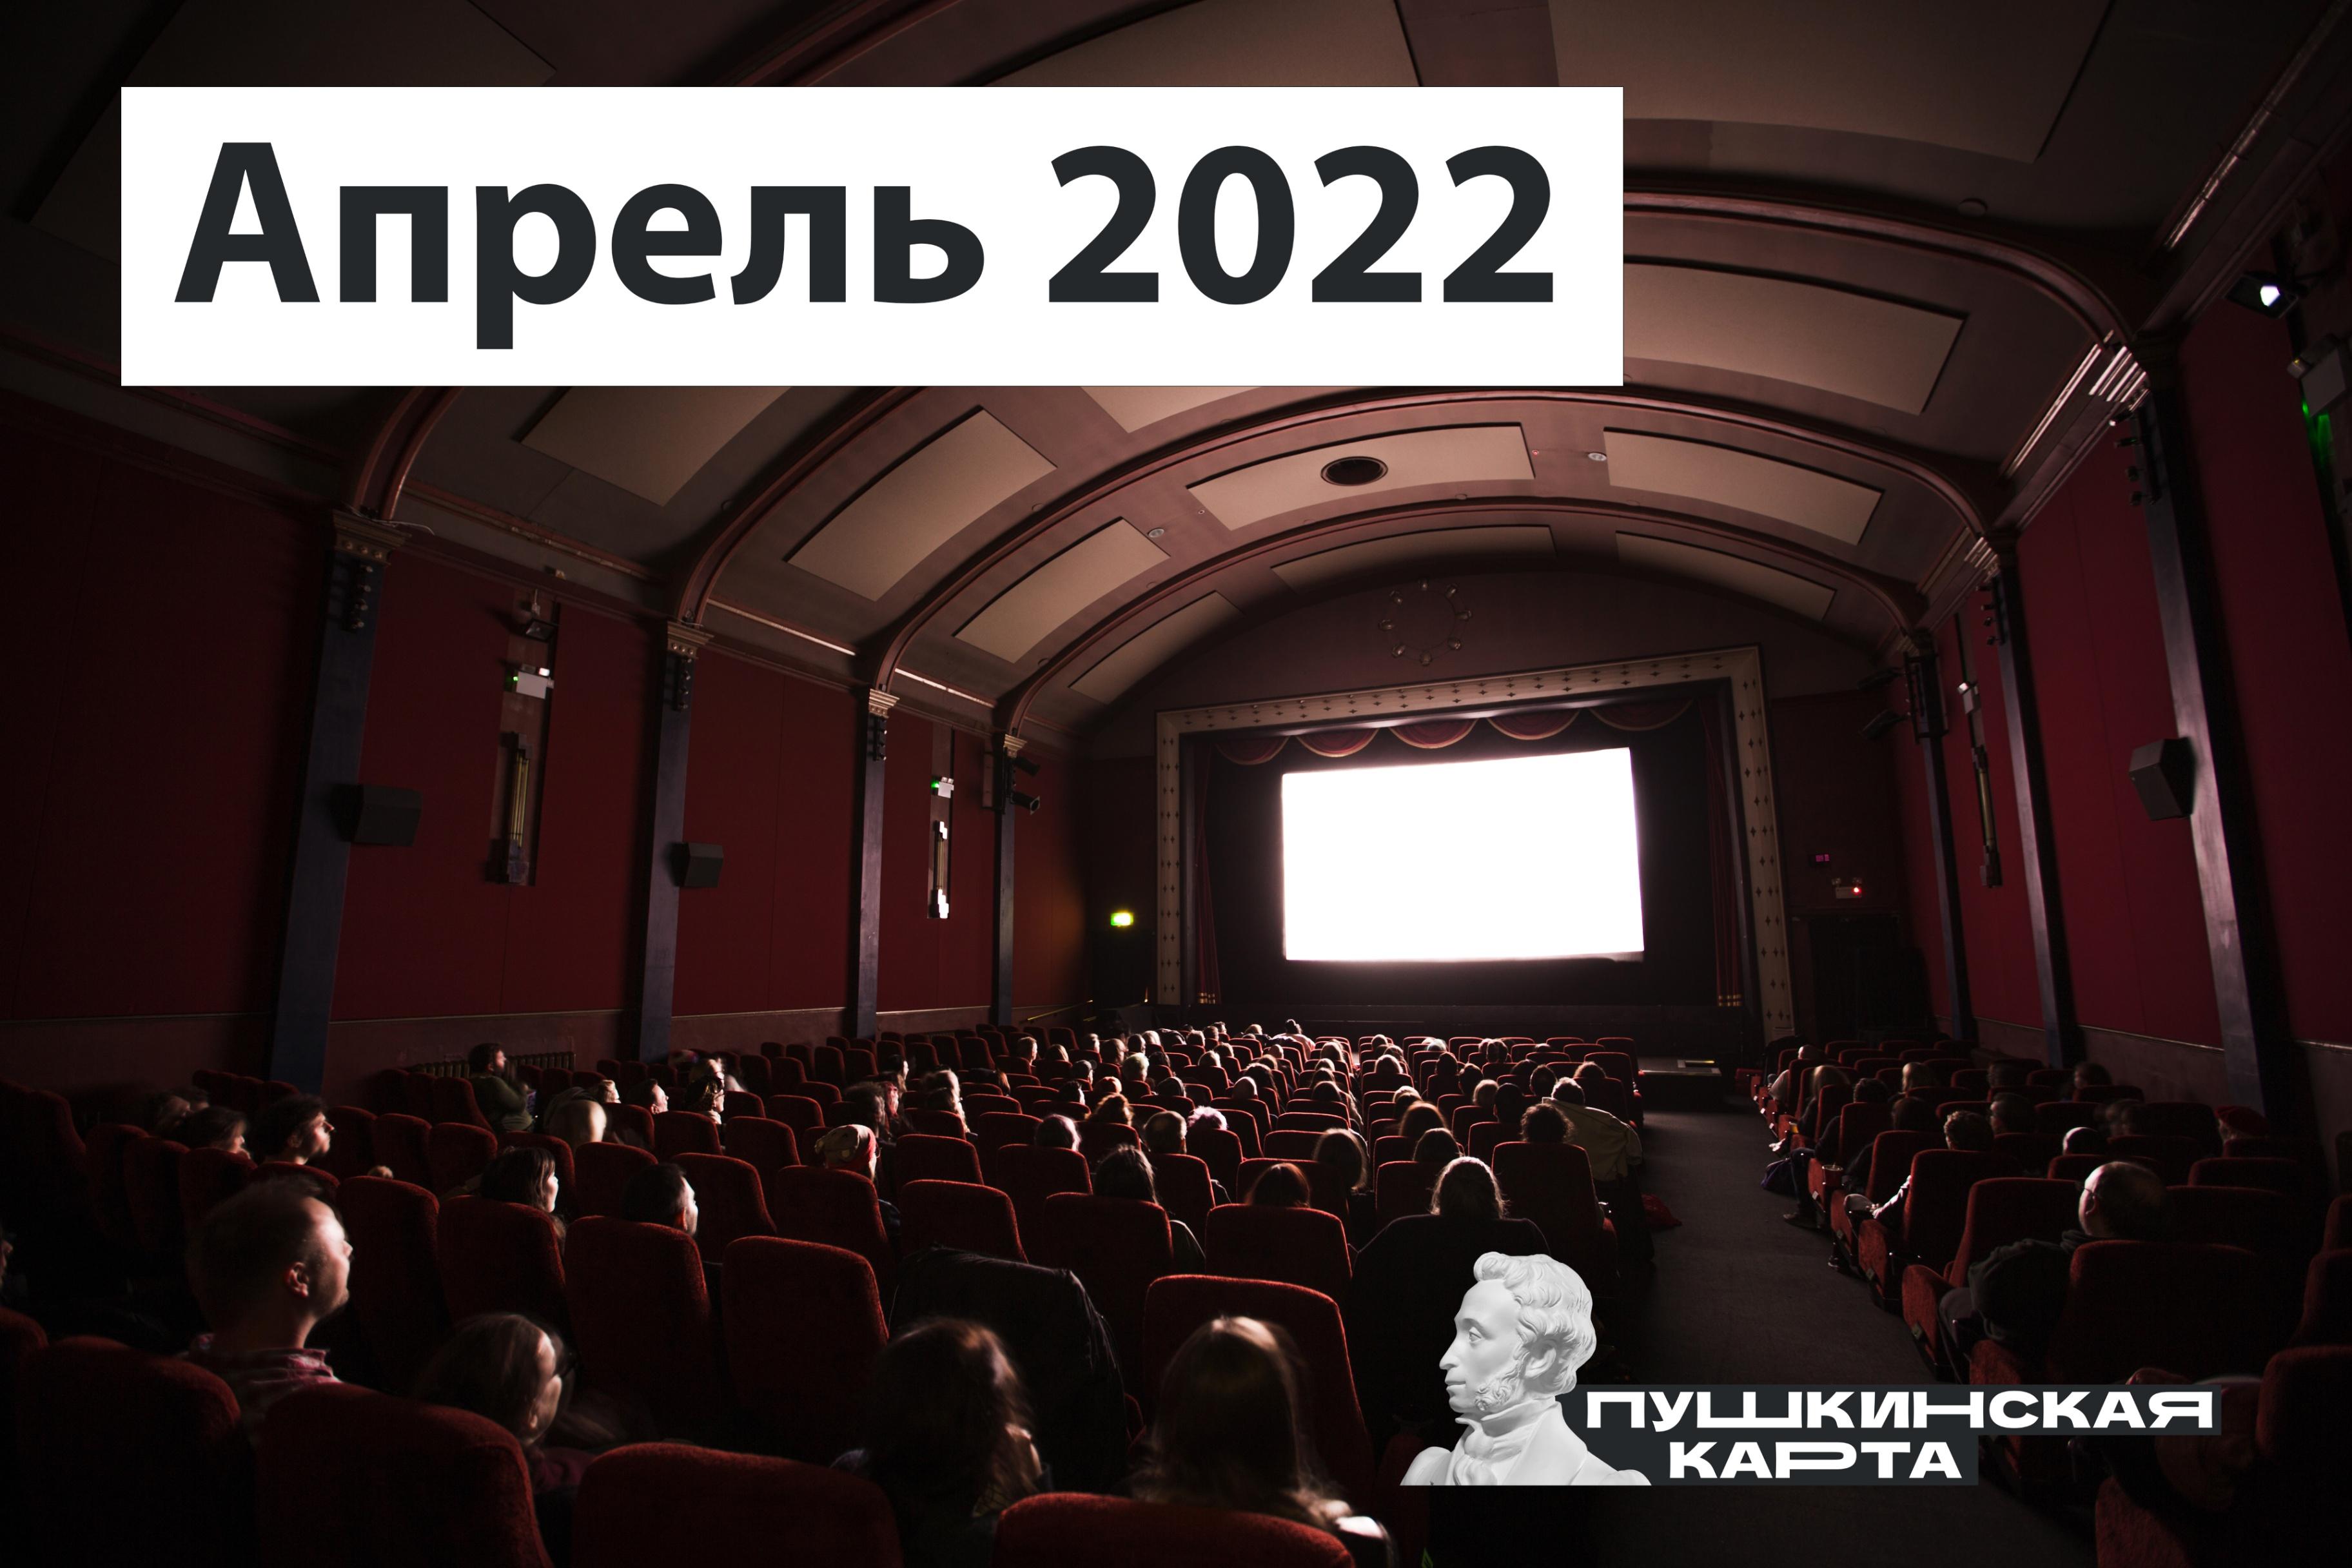 В кино по Пушкинской карте: фильмы апреля 2022 года